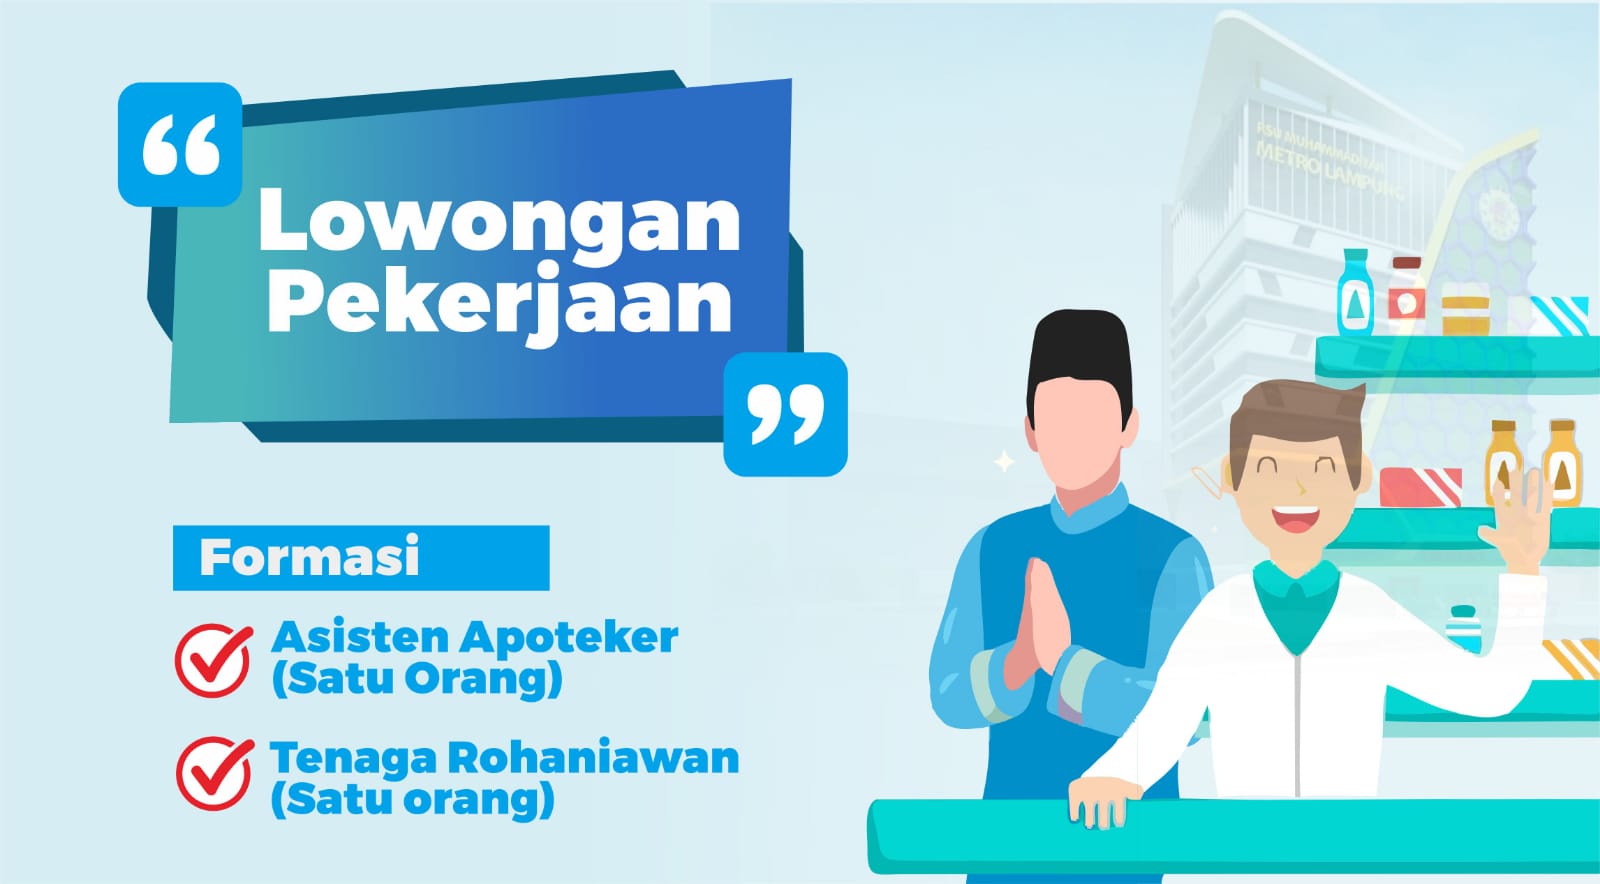 RSU Muhammadiyah Membuka Lowongan Untuk 2 Orang, Lulusan S1 PAI Bisa Daftar